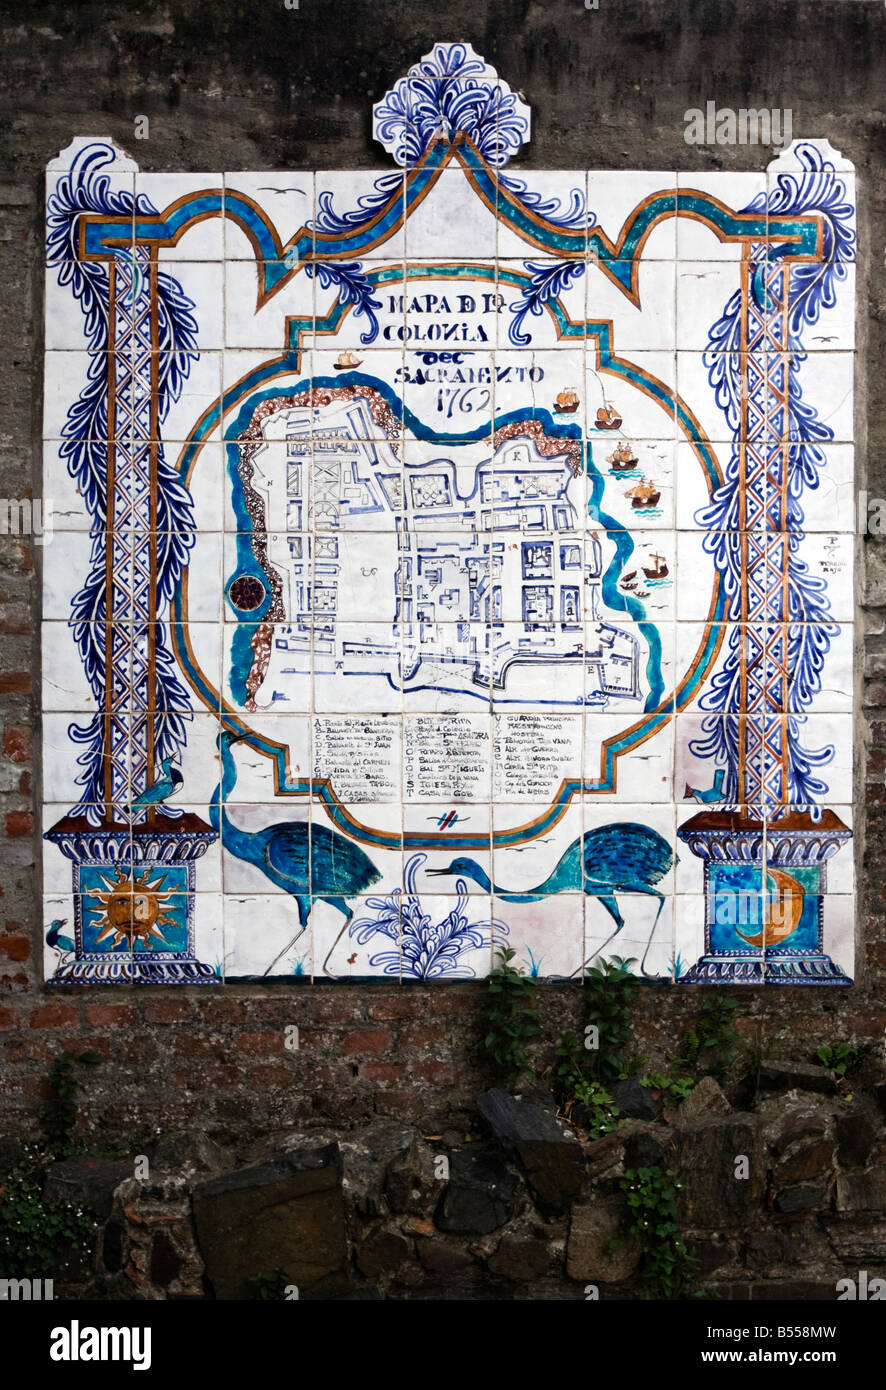 Une carte de Colonia del Sacramento en Uruguay affiche sur un mur dans une rue dans le quartier historique Banque D'Images